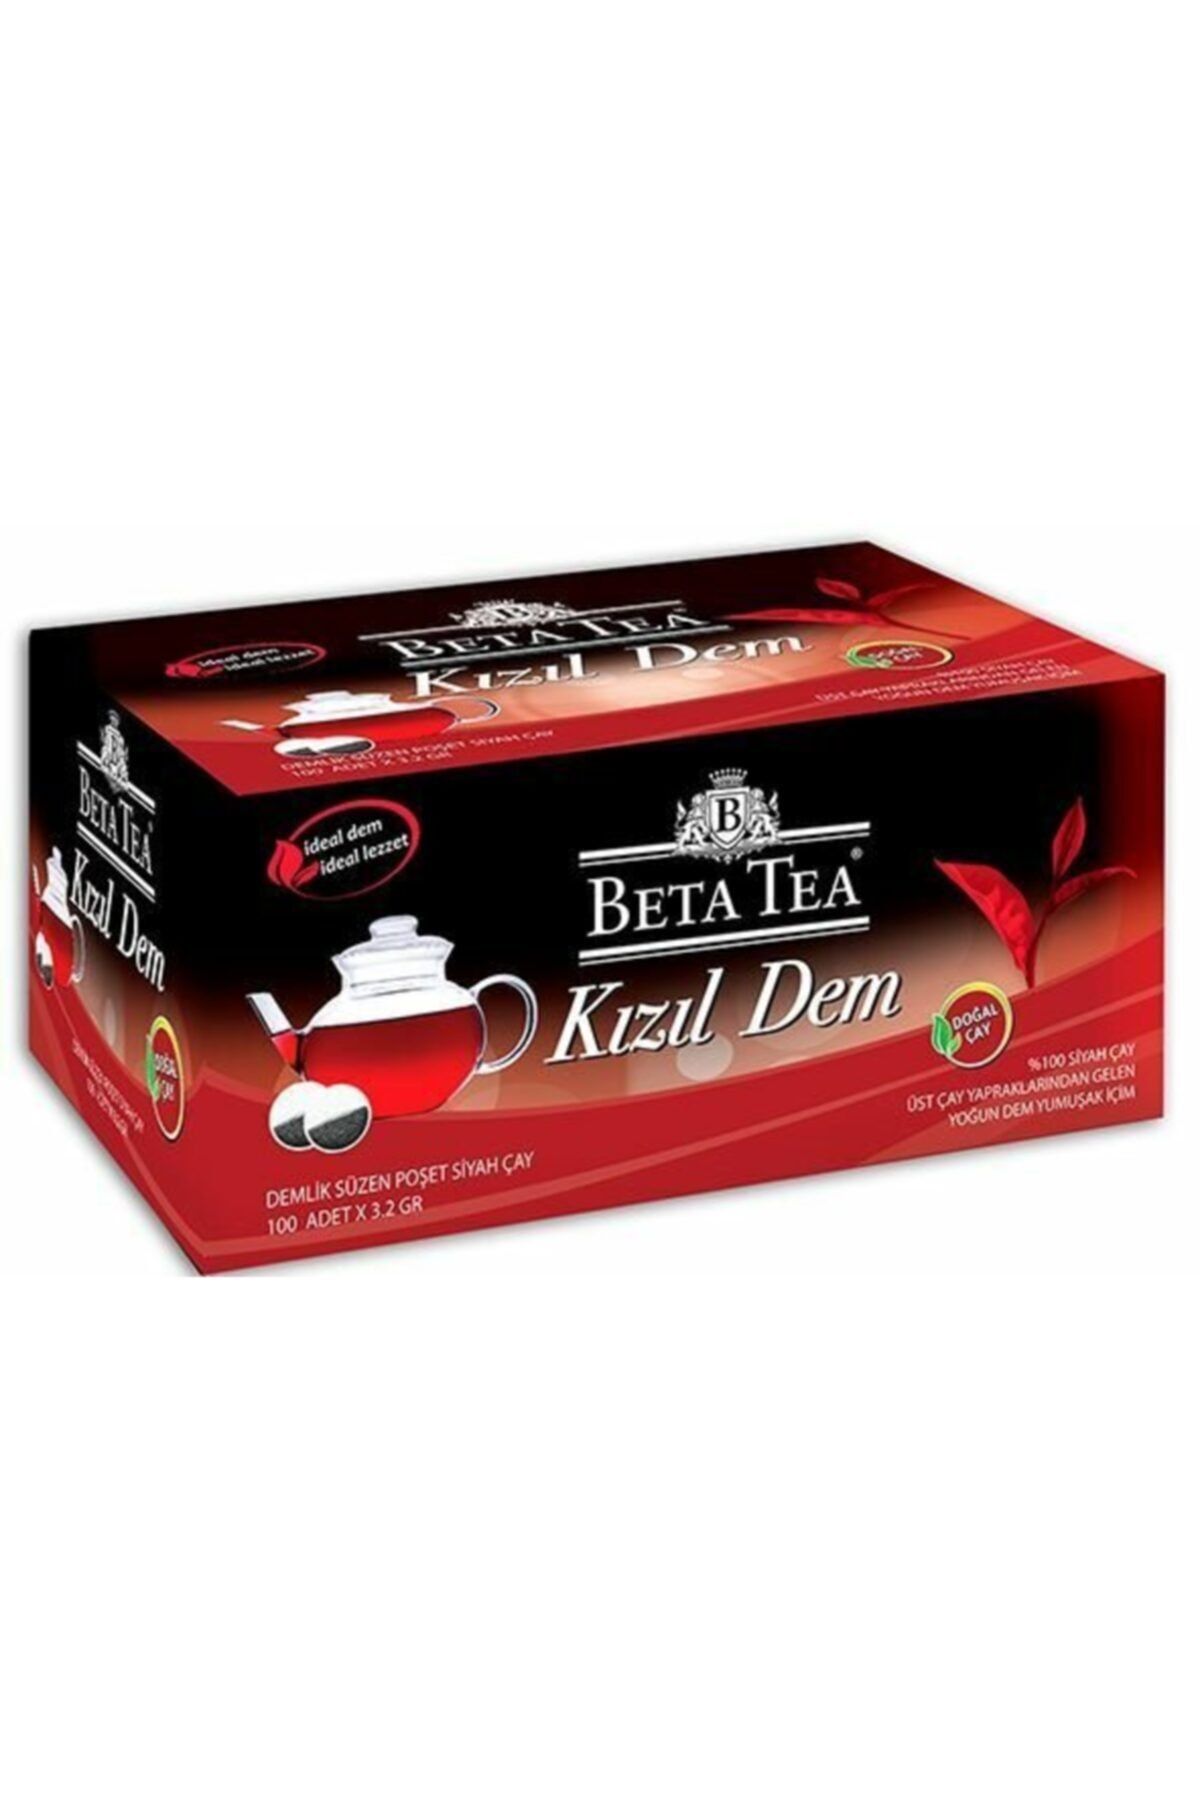 Beta Tea Kızıl Dem Türk Çayı Demlik Poşet 100 Adet